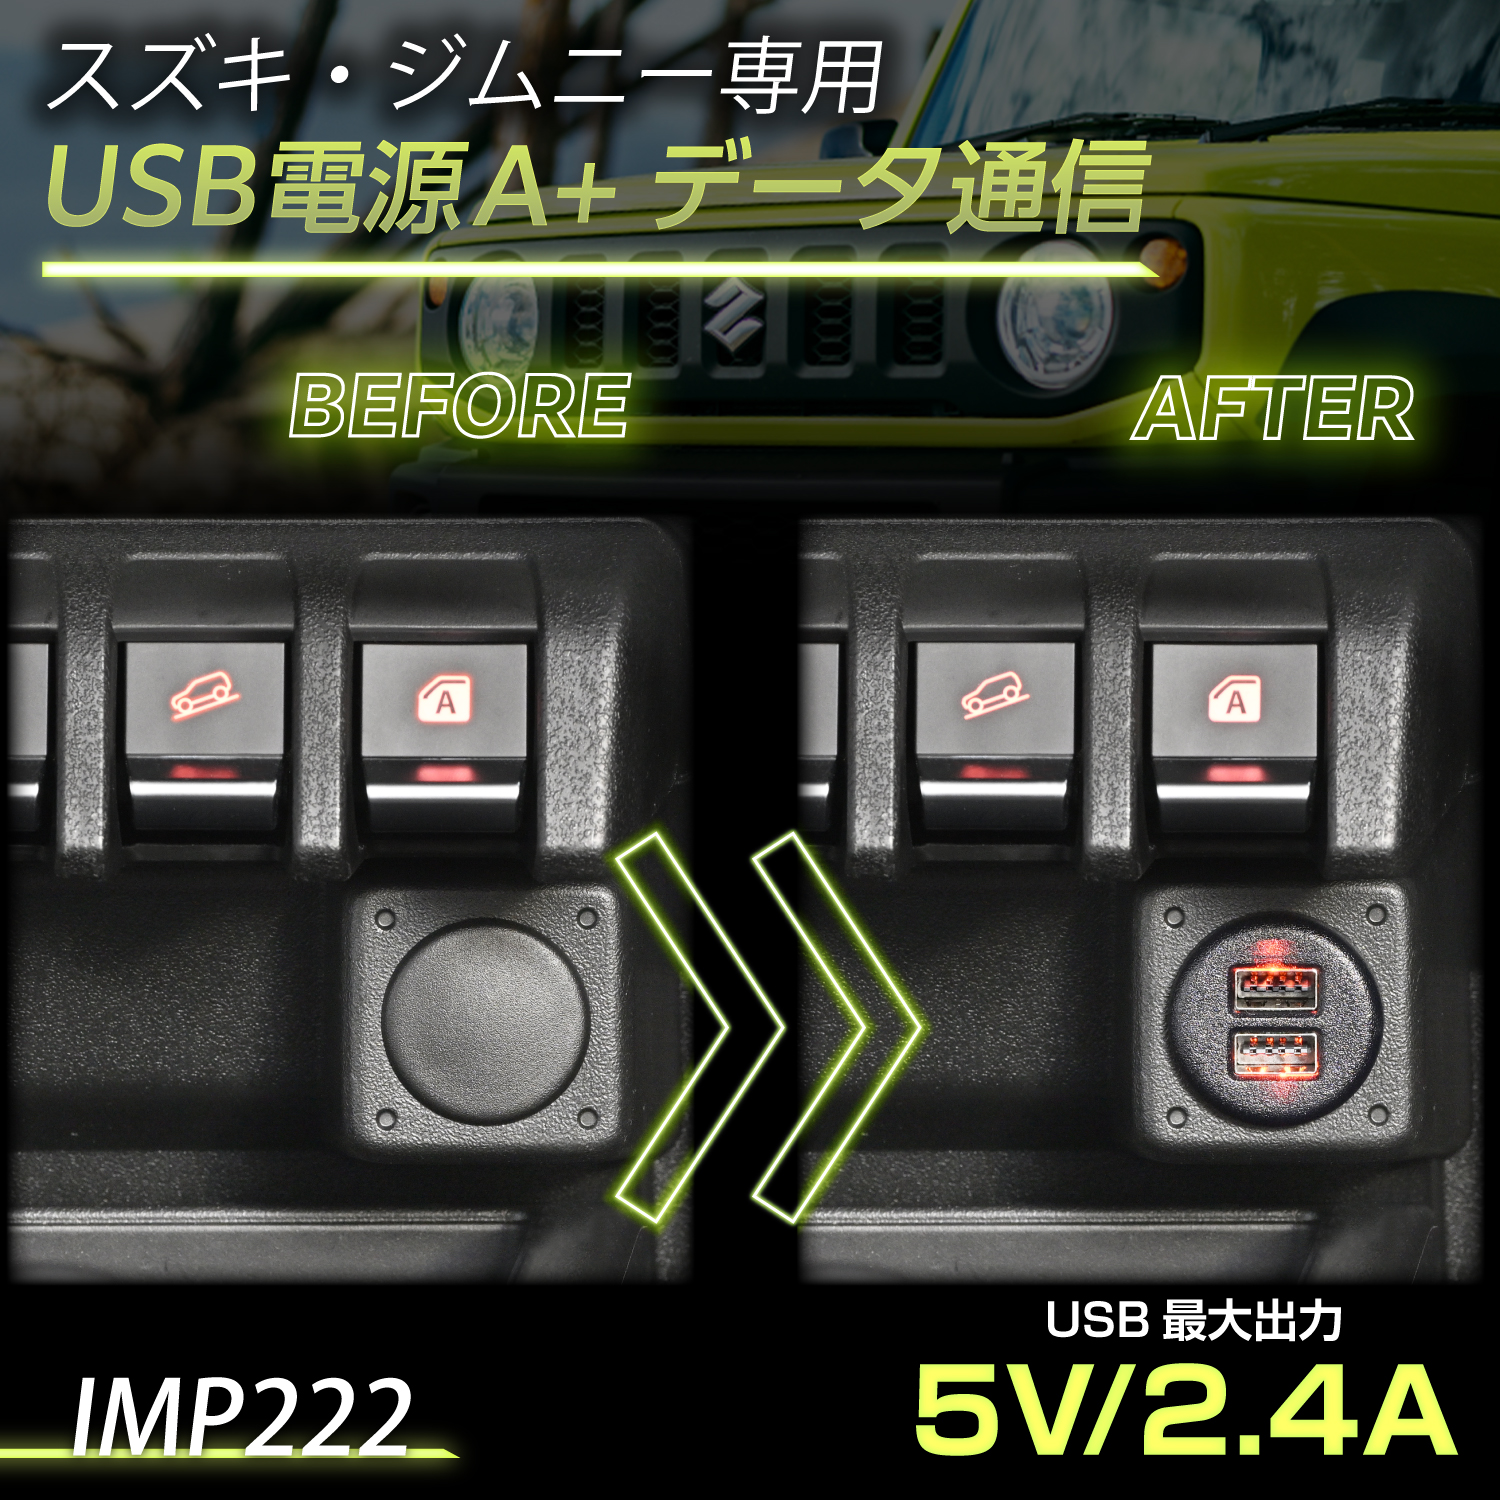 スズキ・ジムニー専用USB電源 A+データ通信 | カー用品のセイワ